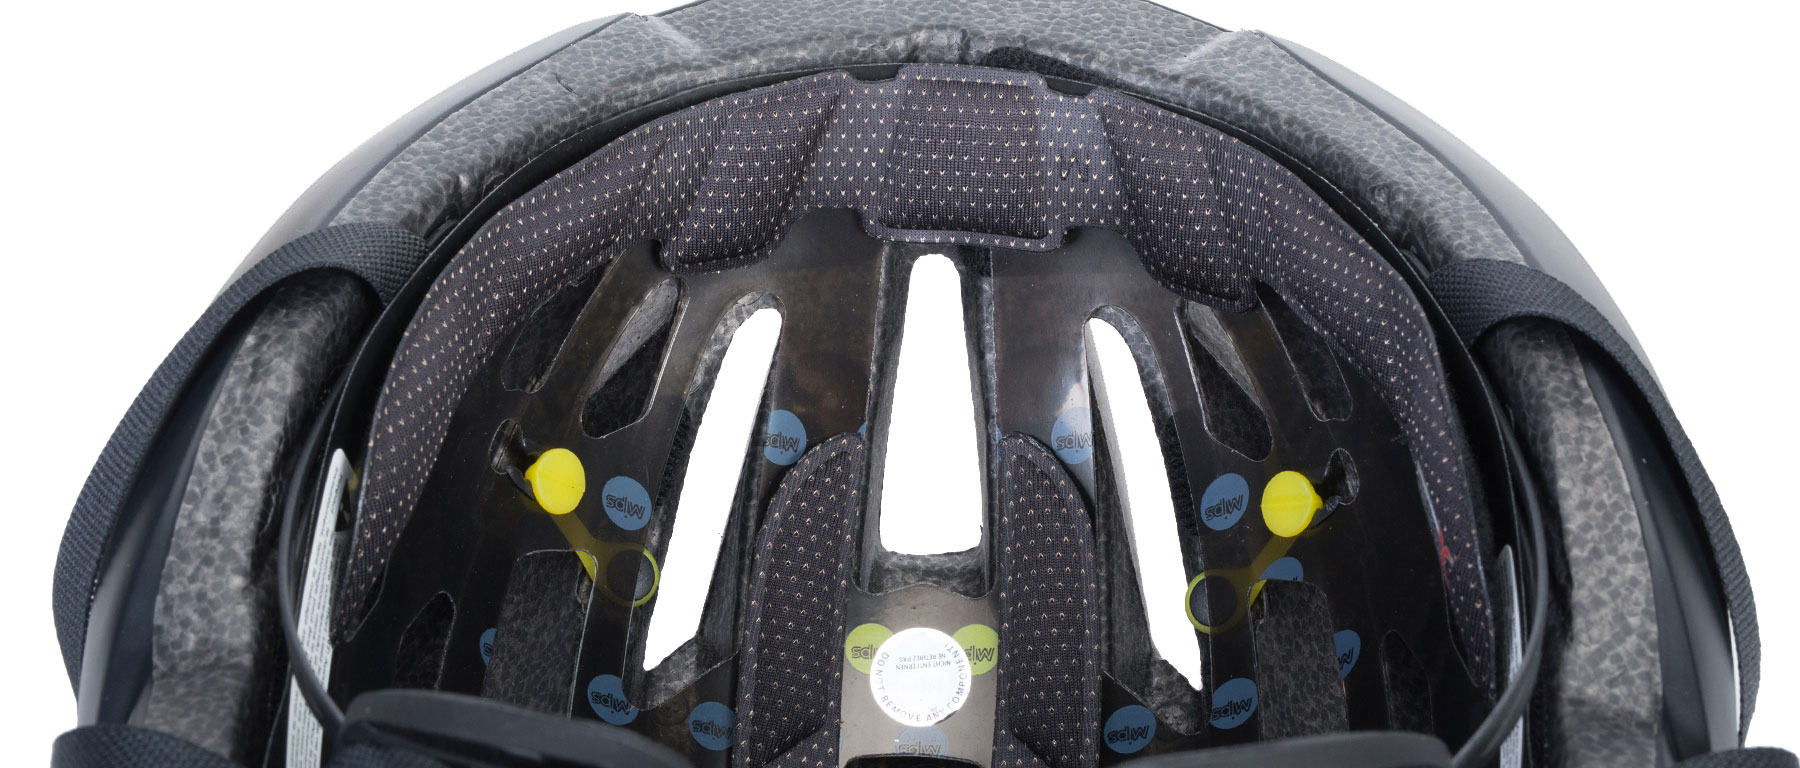 Giro Cinder MIPS Helmet